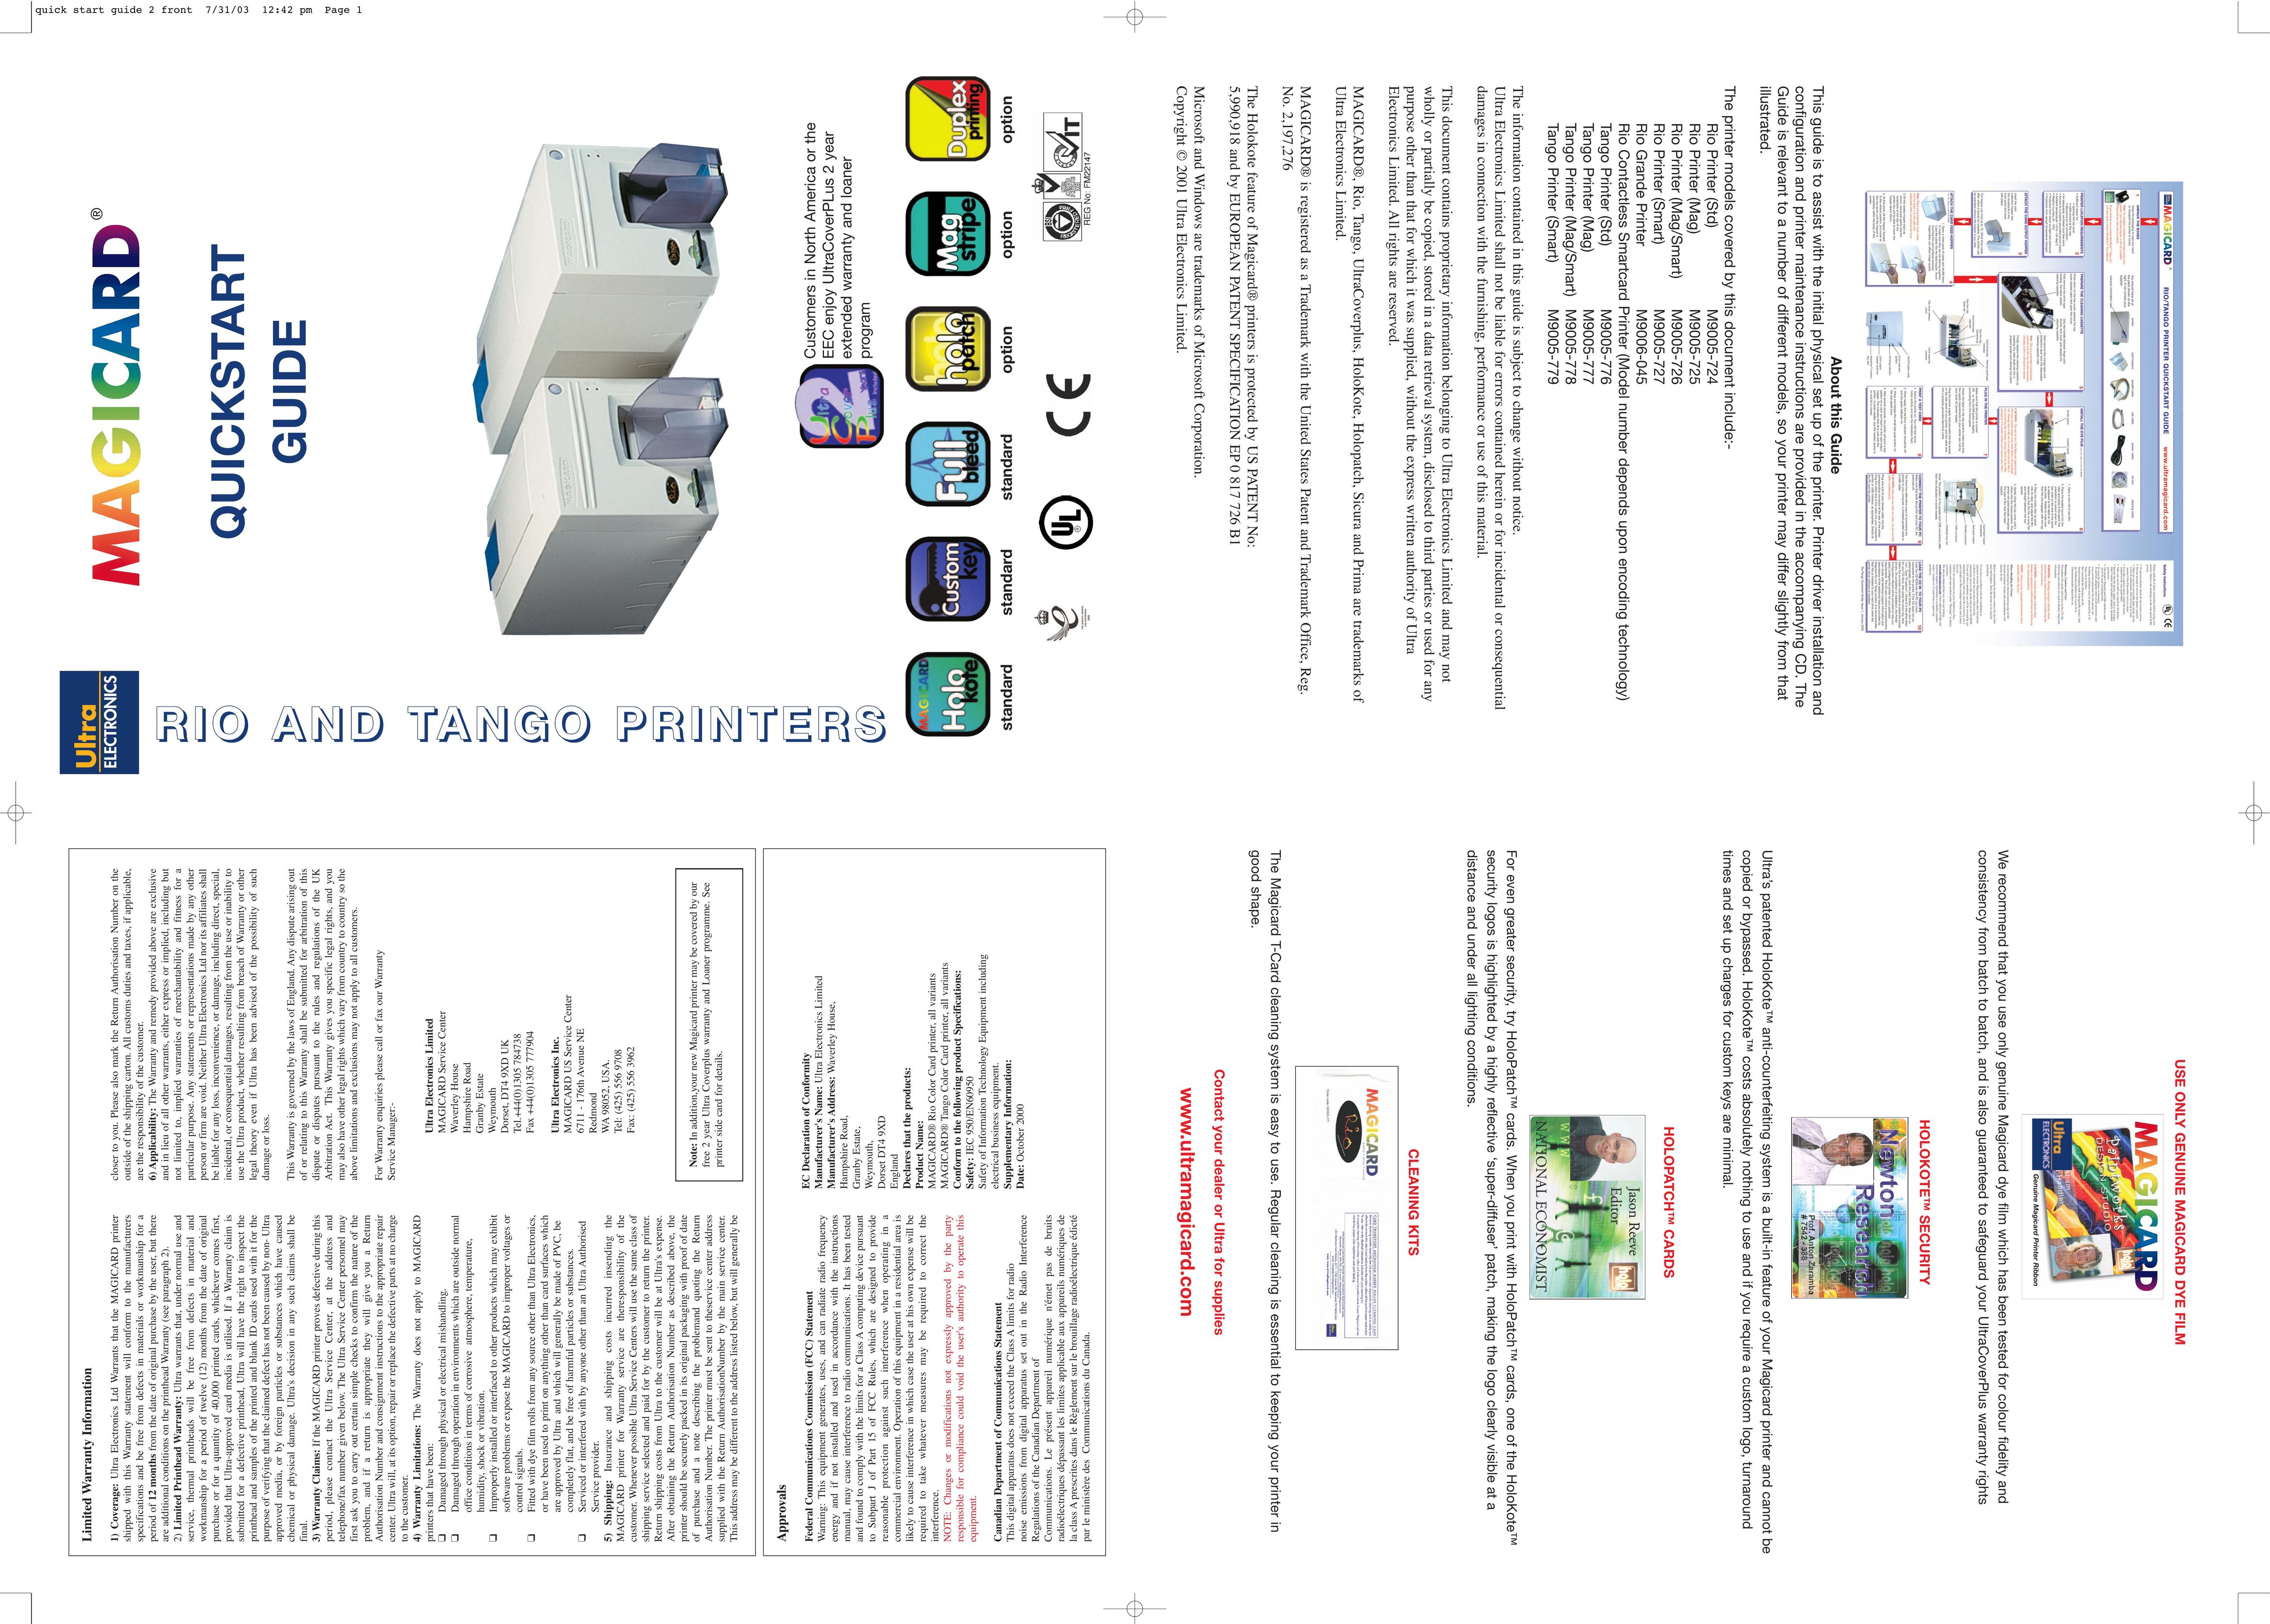 Ultra electronic M9005-725 Printer User Manual